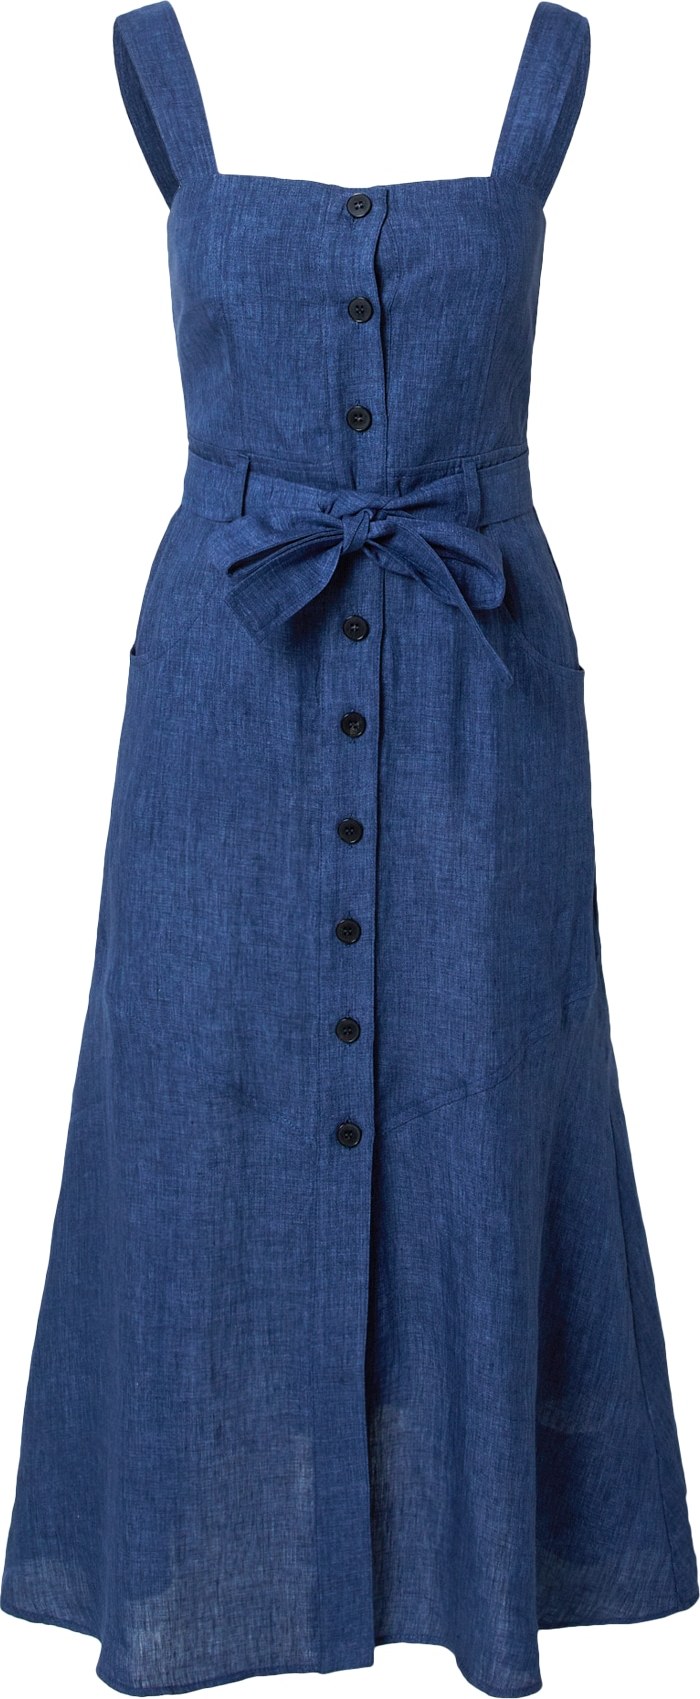 Marella Košilové šaty 'NIZZA' tmavě modrá